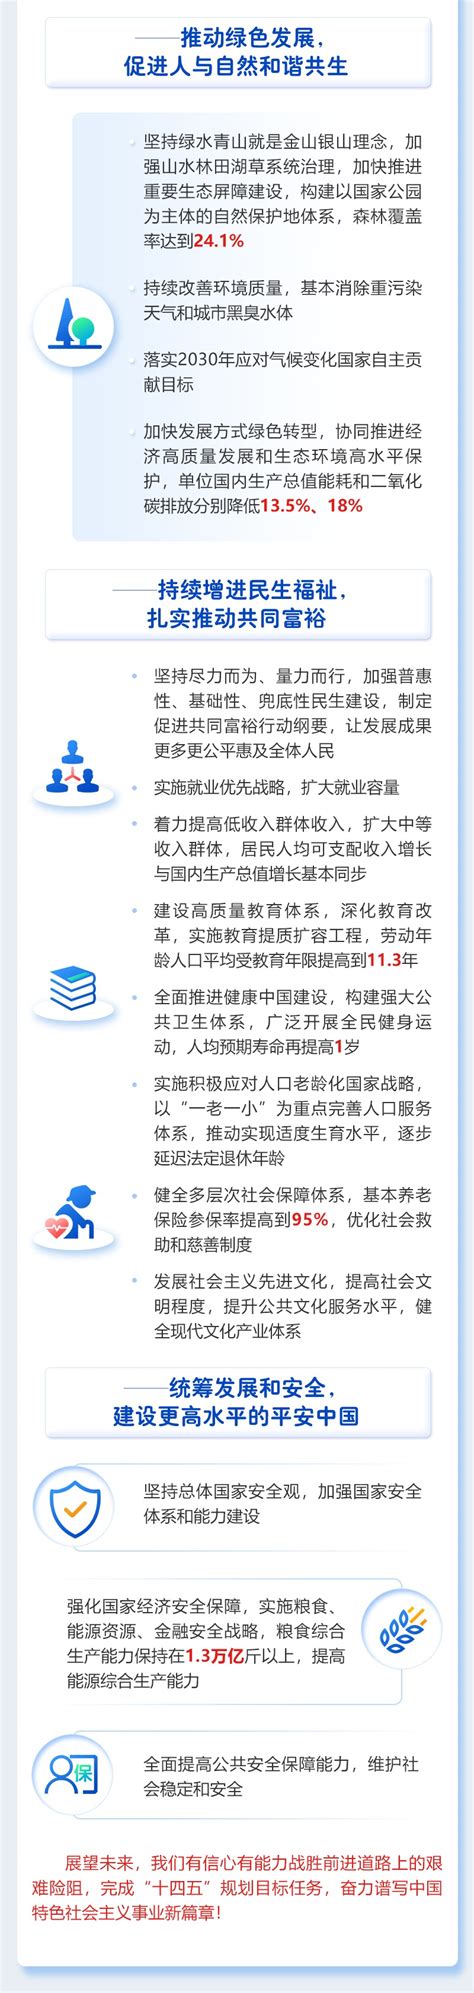 我院荣获郑州市2021年度高校维稳安保工作先进单位_党政信息_郑州美术学院